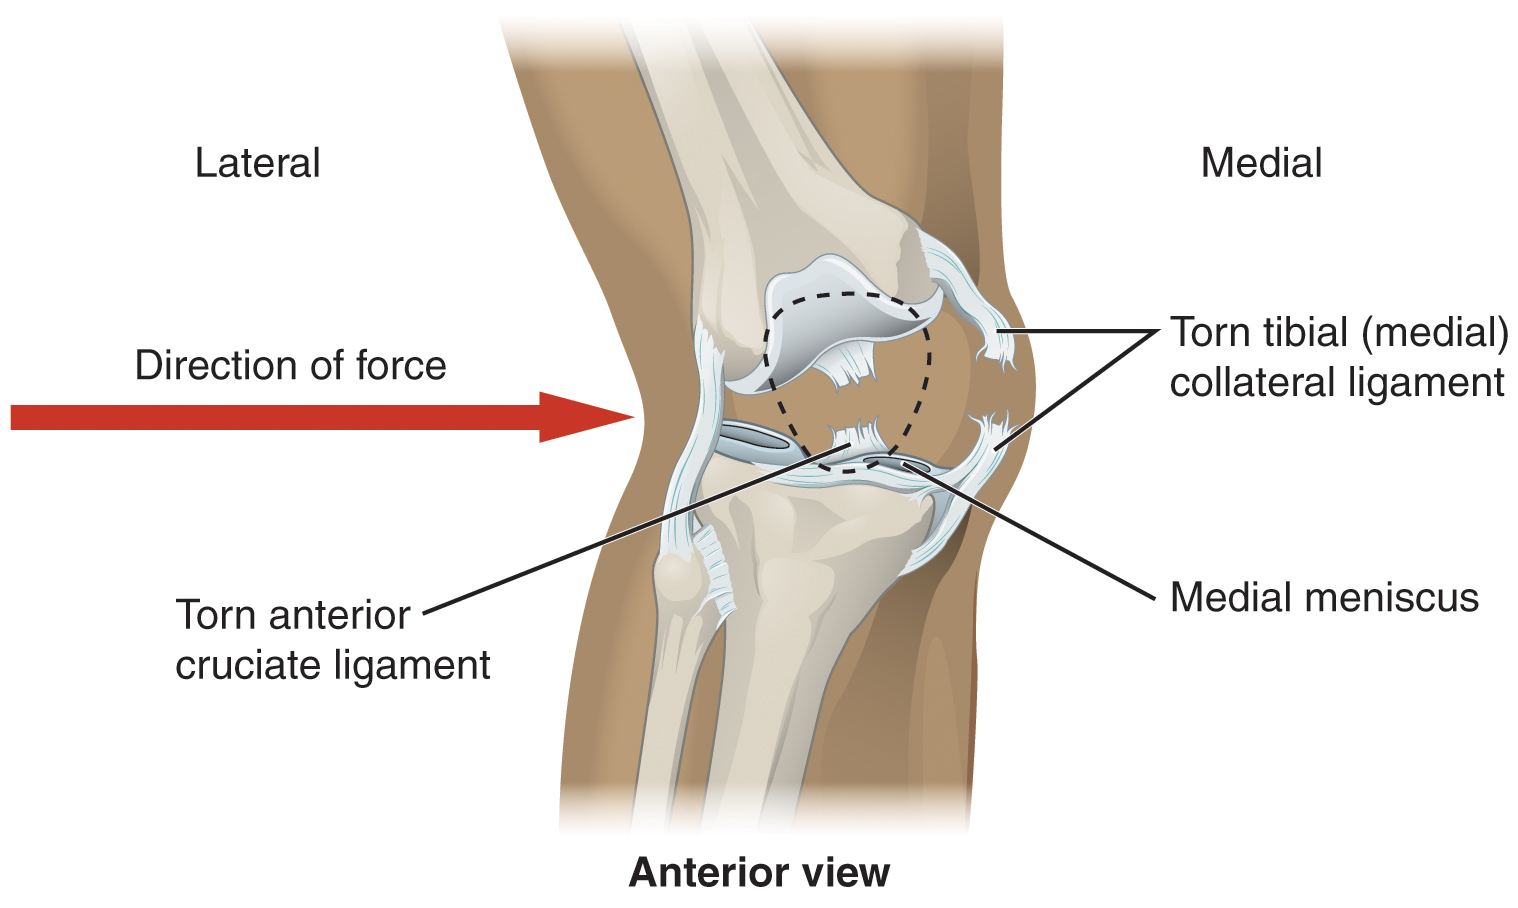 Esta imagem mostra uma articulação do joelho lesionada. Uma seta vermelha aponta da esquerda para a direita mostrando a direção da força que causou a lesão.